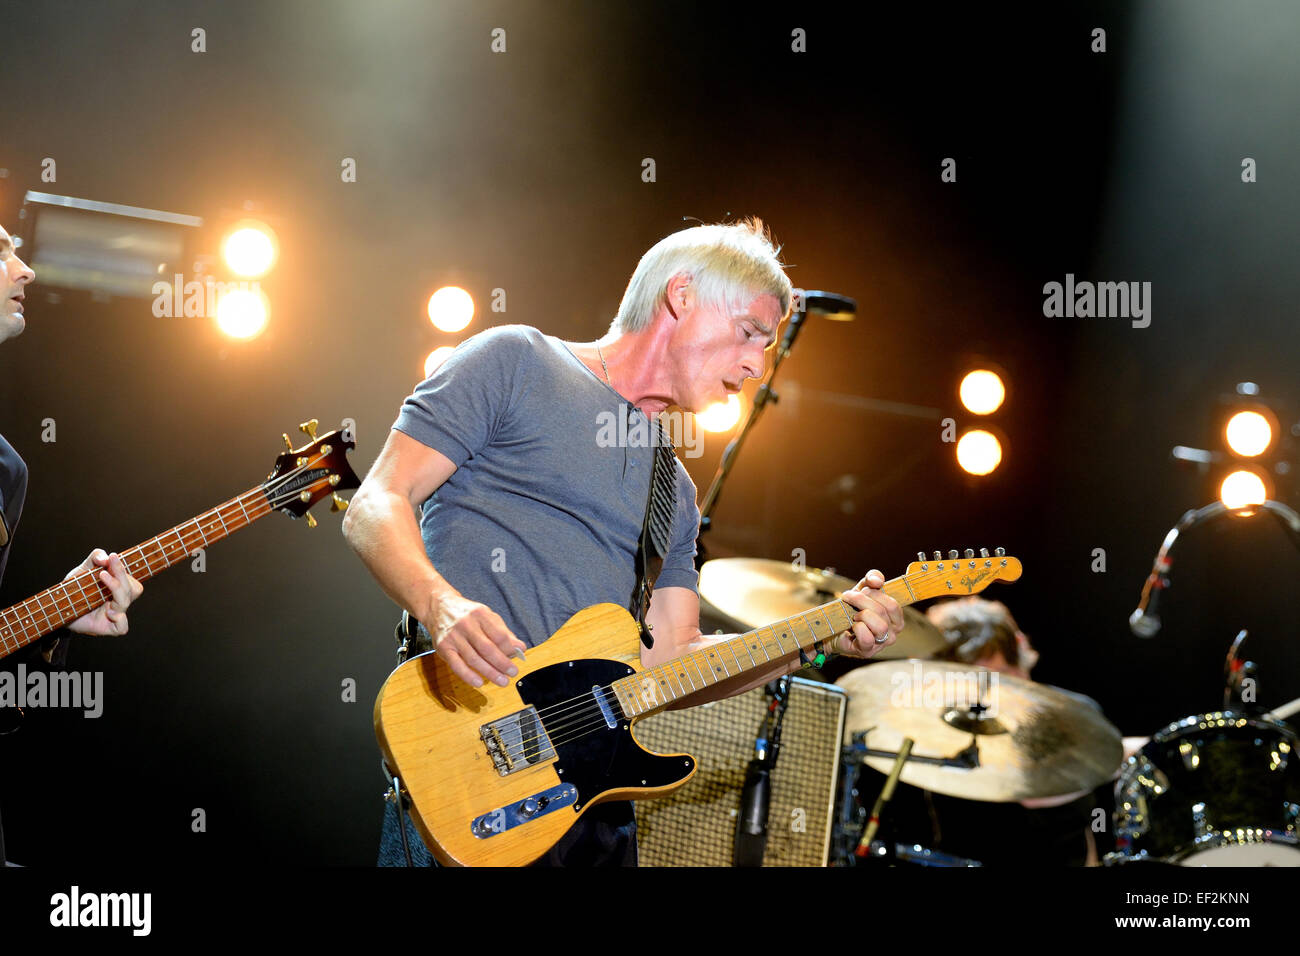 BENICASSIM, Spanien - 18 Juli: Paul Weller (britischer Sänger, Songwriter und Musiker) führt bei FIB Festival. Stockfoto